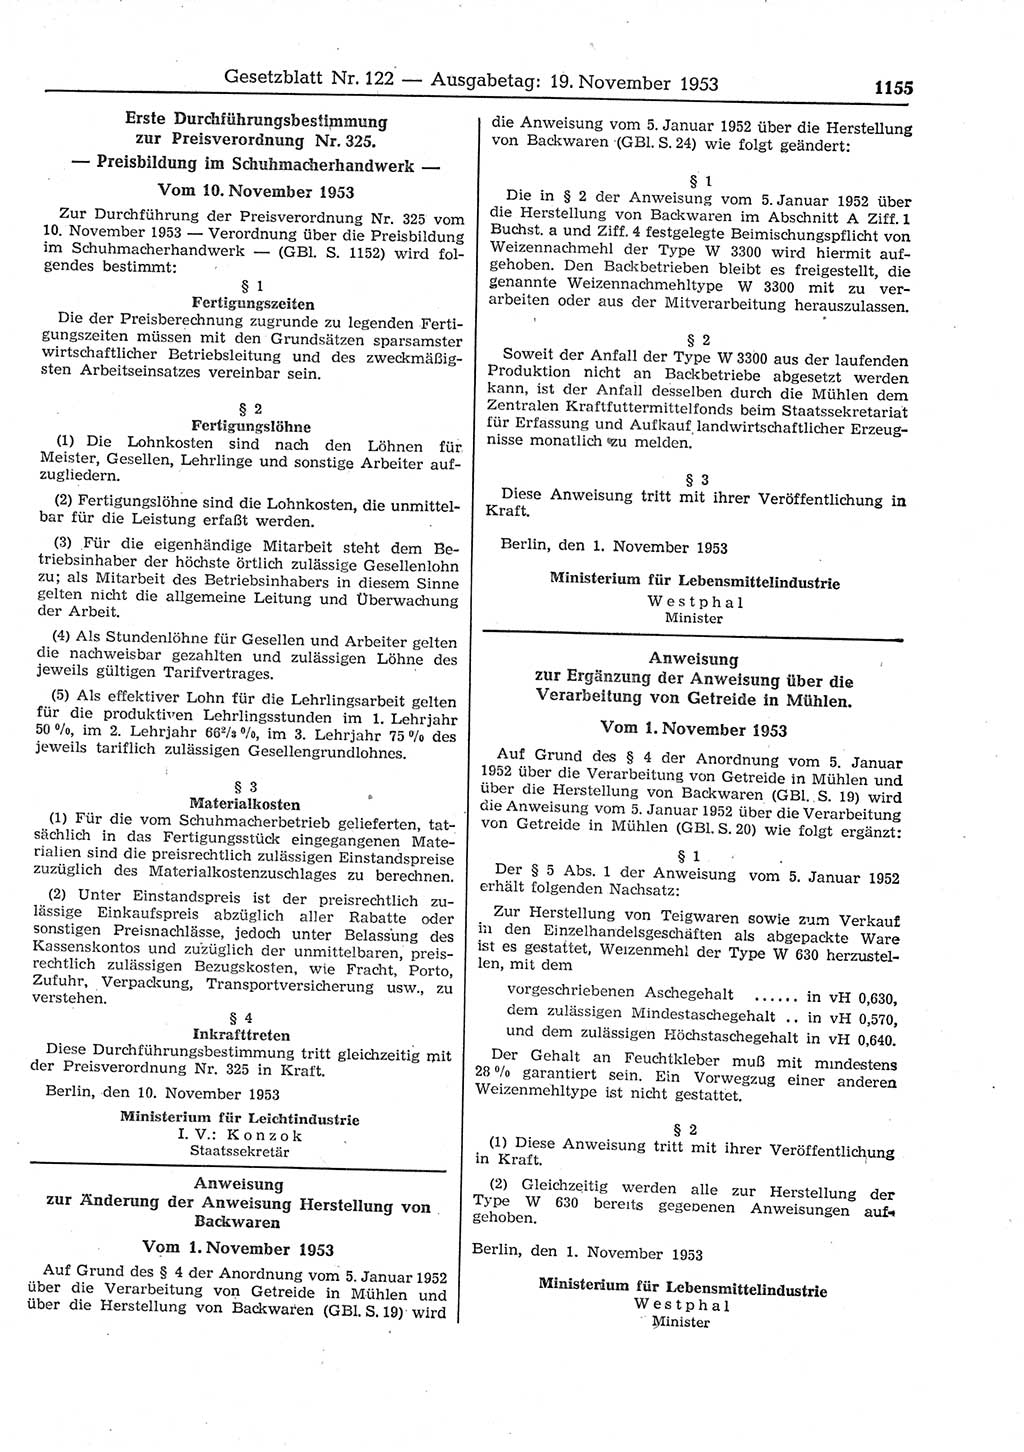 Gesetzblatt (GBl.) der Deutschen Demokratischen Republik (DDR) 1953, Seite 1155 (GBl. DDR 1953, S. 1155)